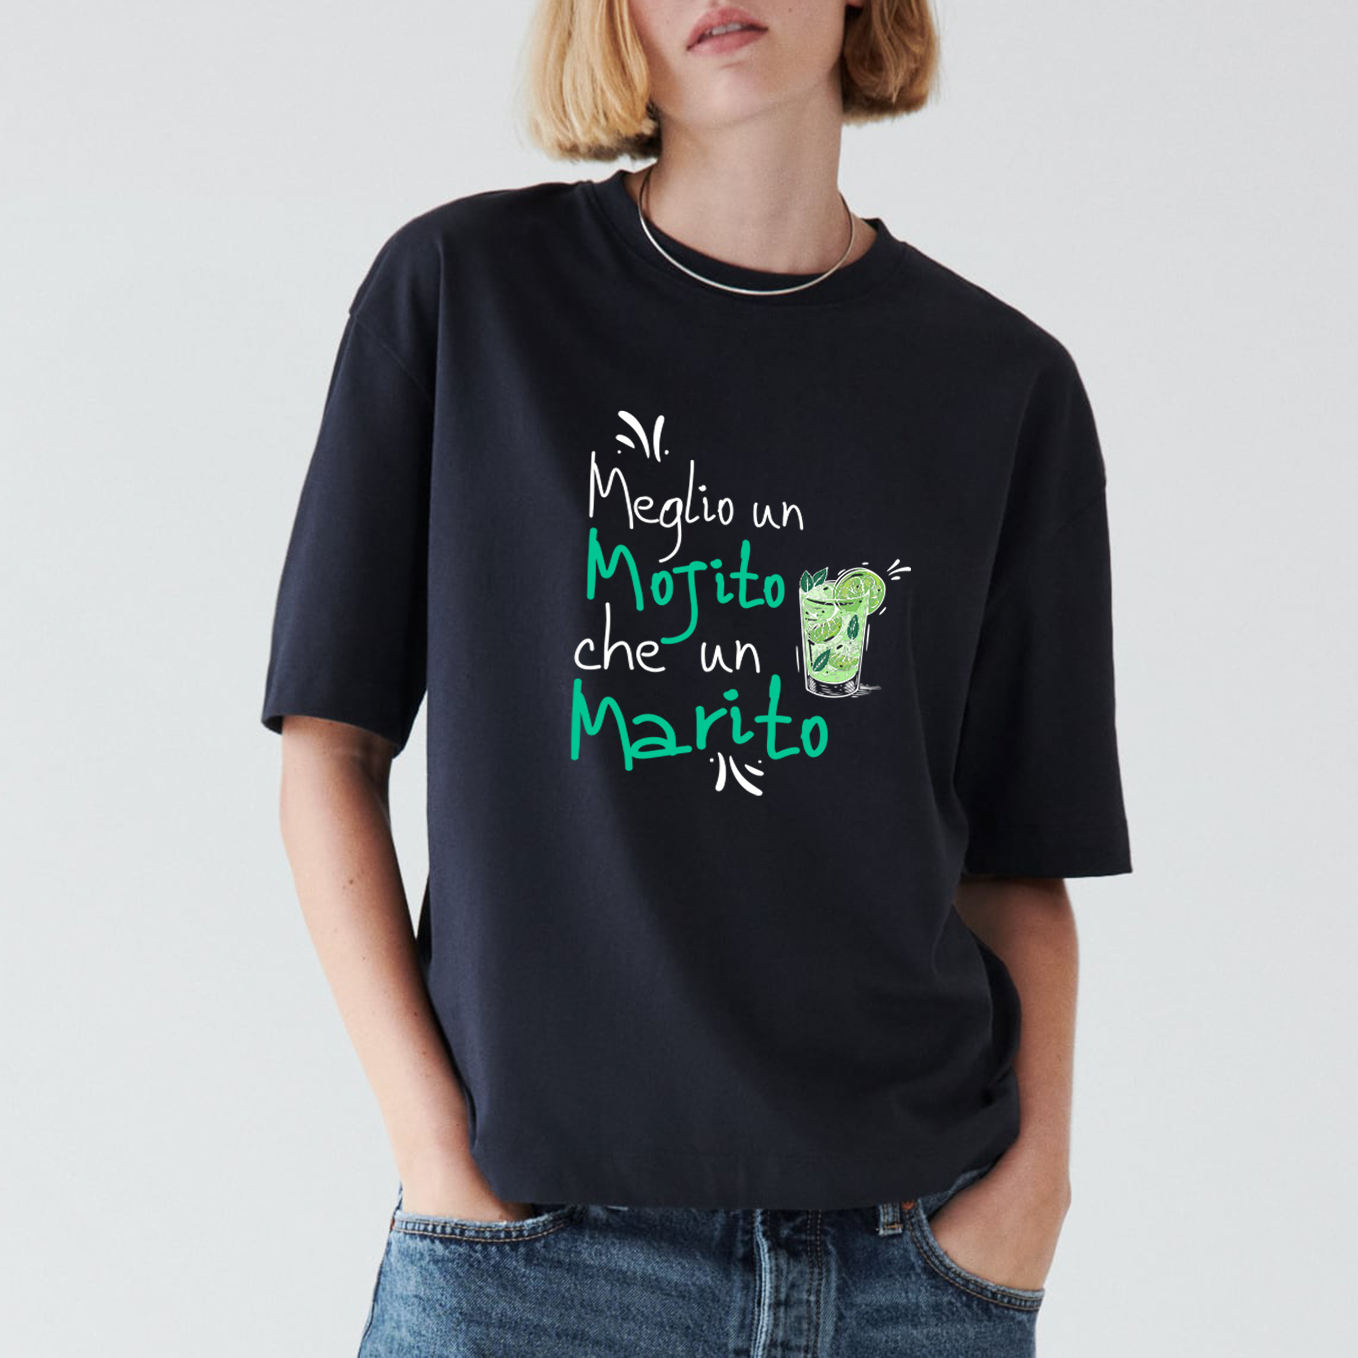 T-shirt "Meglio un Mojito"